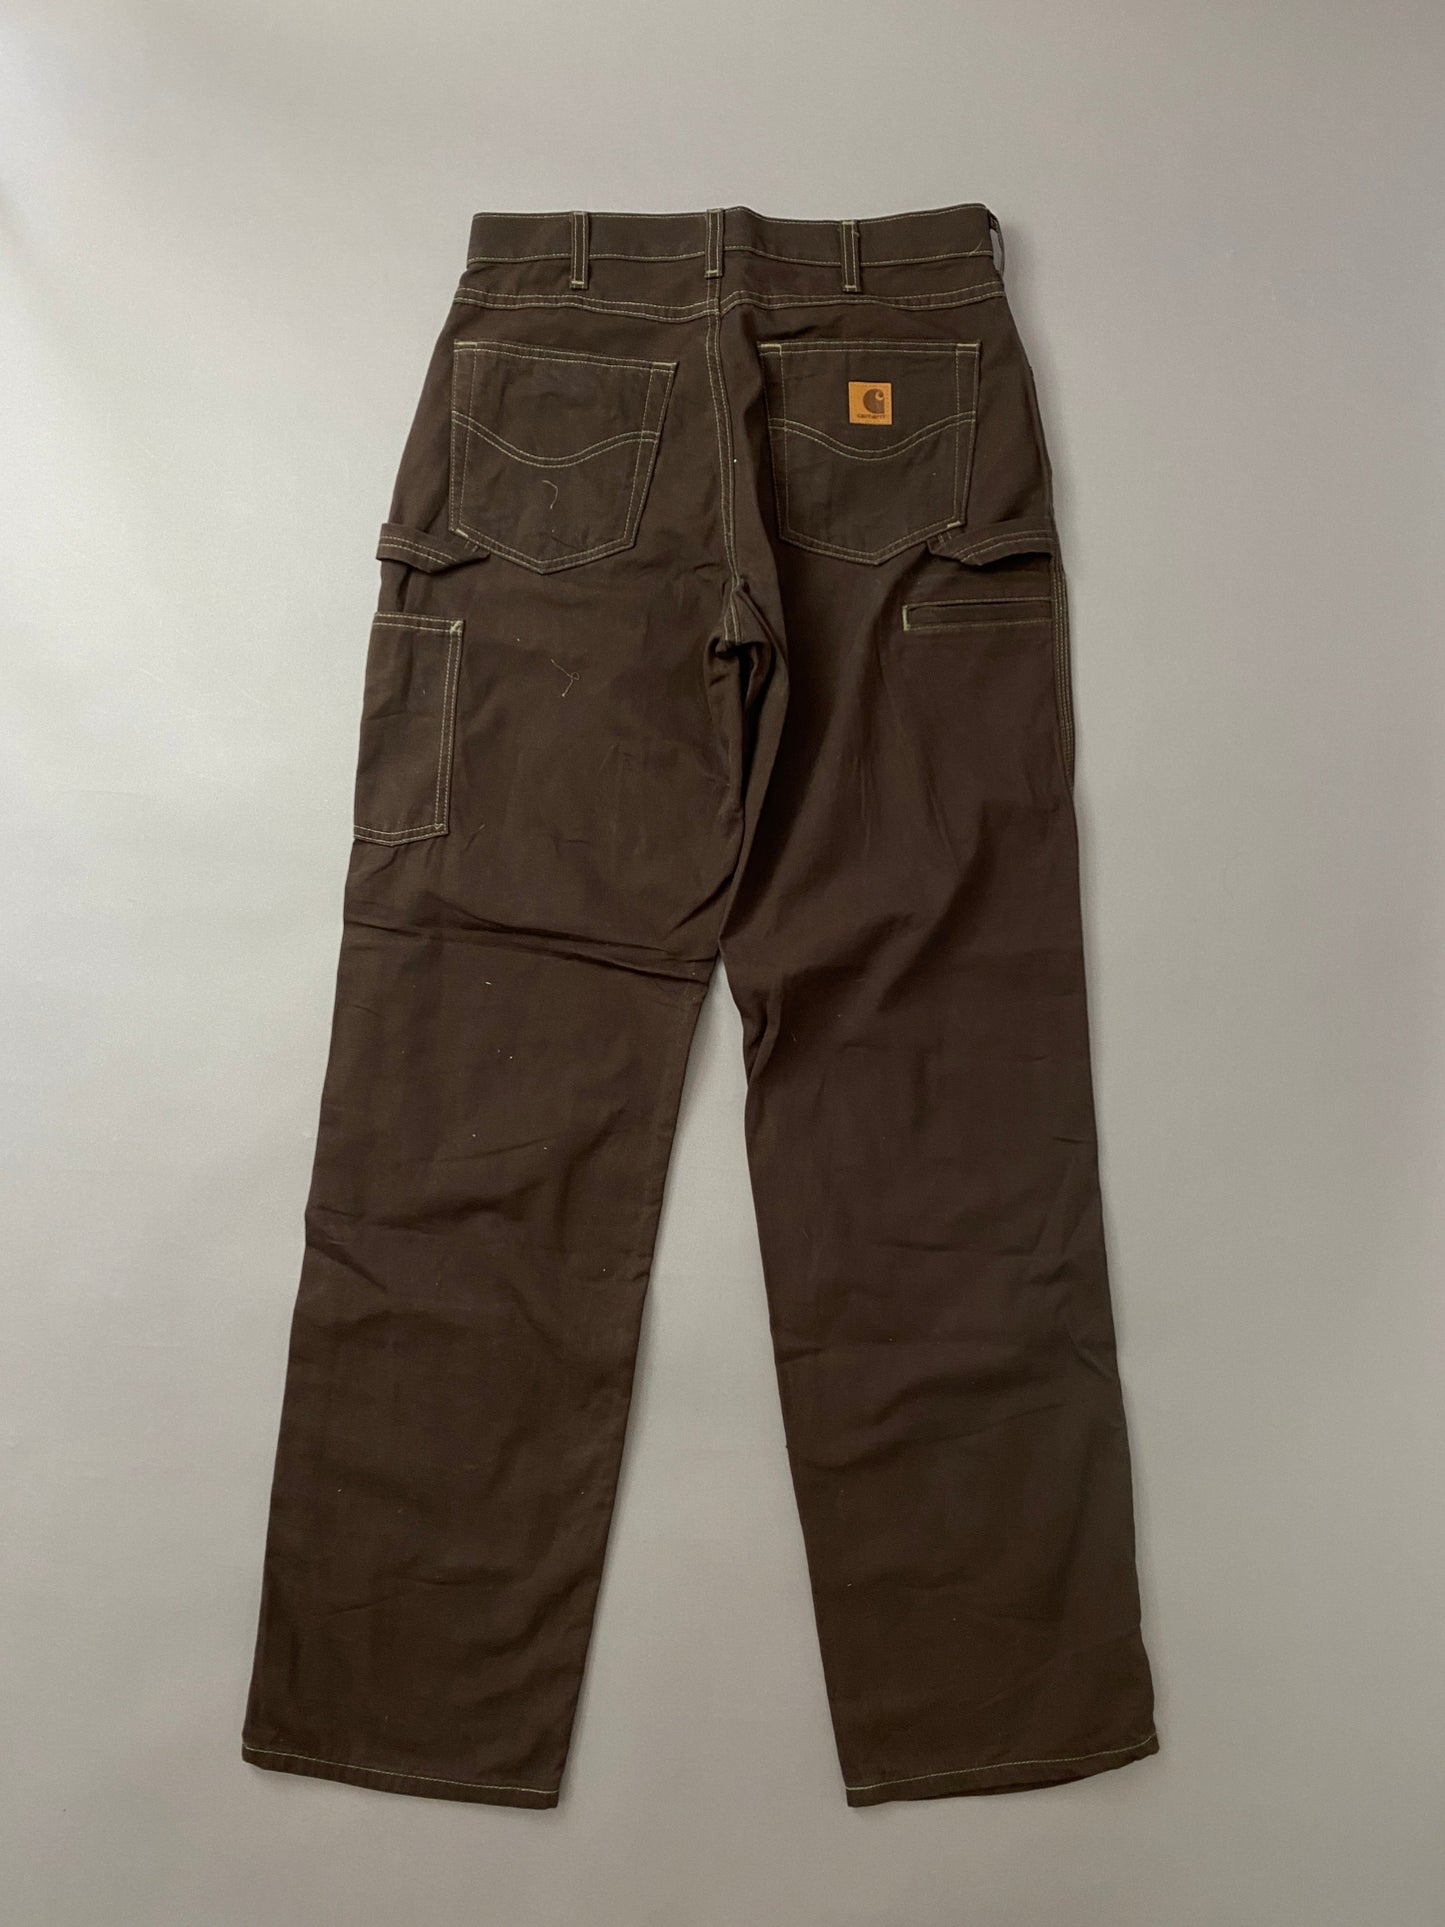 Pantalones Carhartt Carpenter - 32 x 34